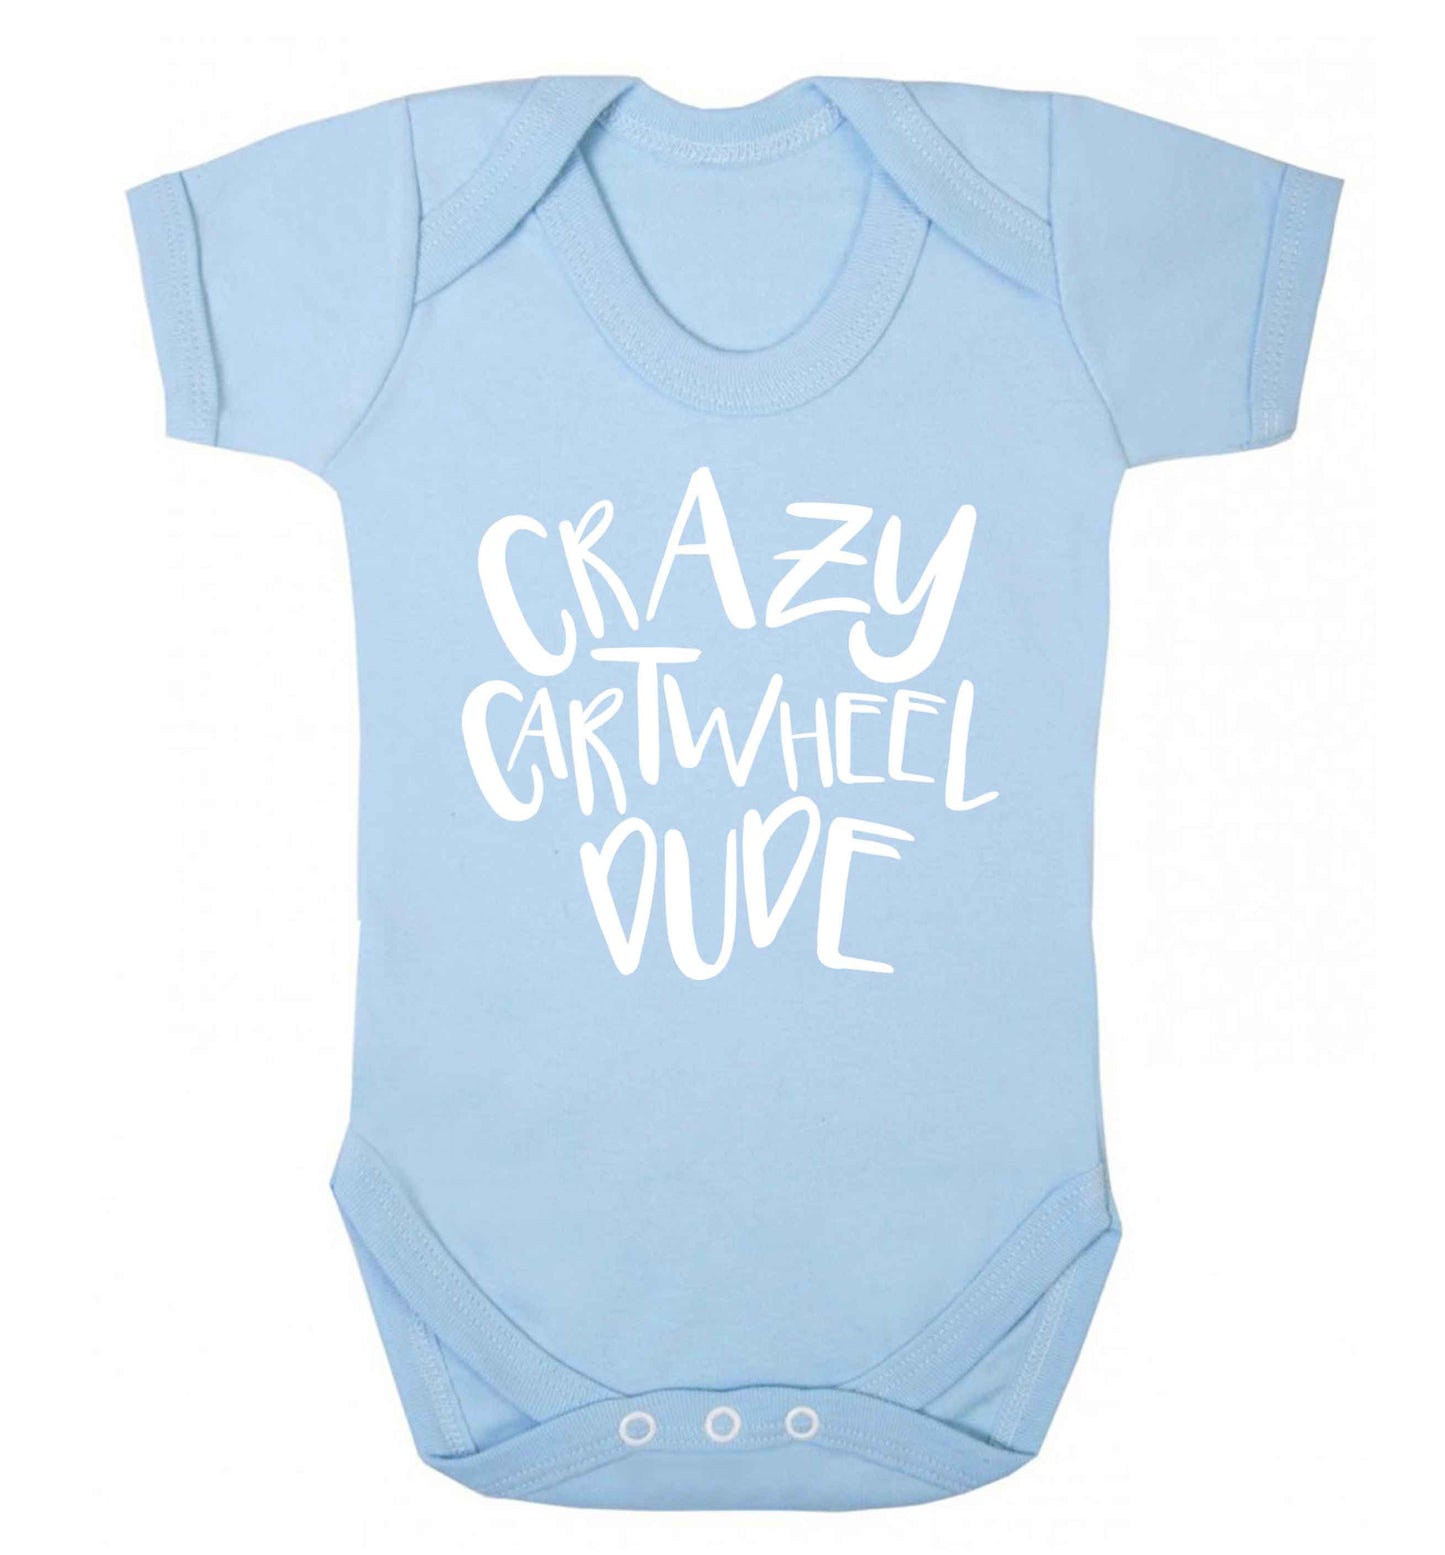 Crazy cartwheel dude Baby Vest pale blue 18-24 months